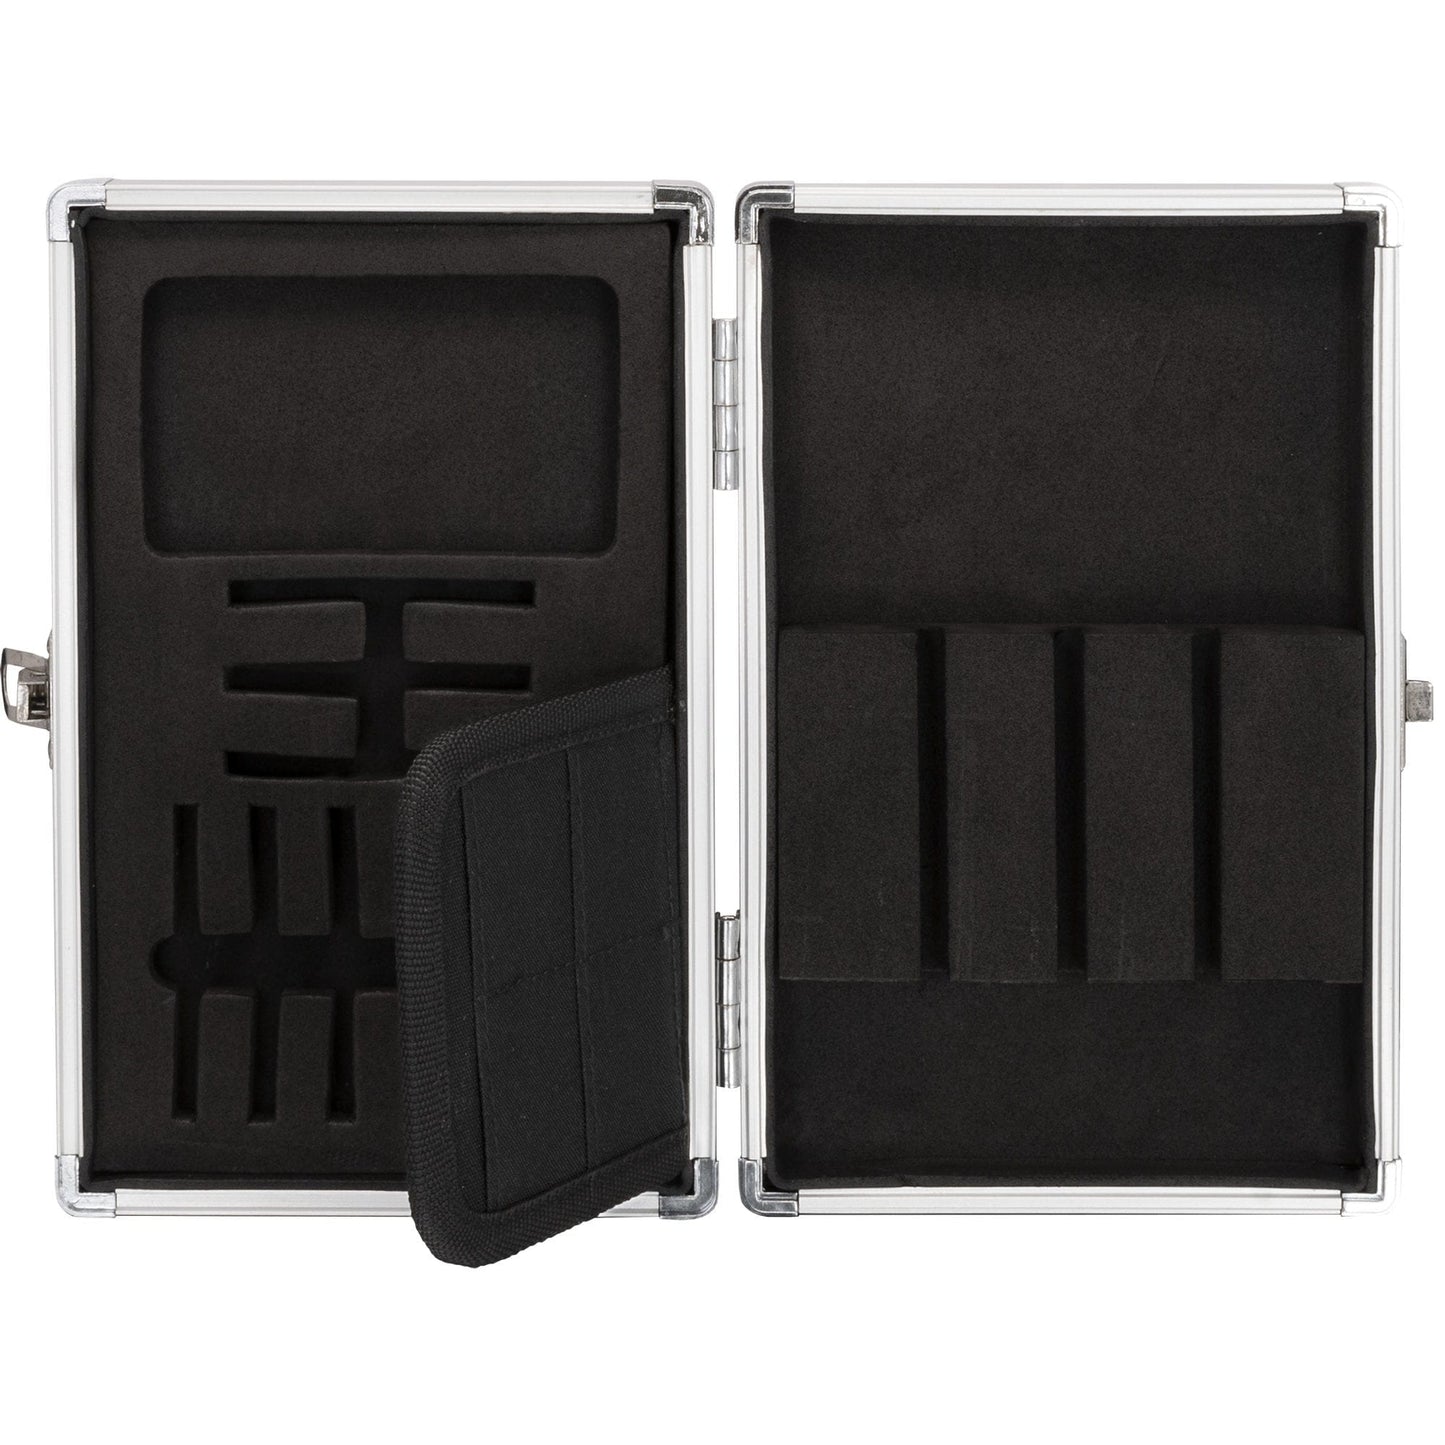 *Designa Aluminium Dart Case - Secure Multi Use